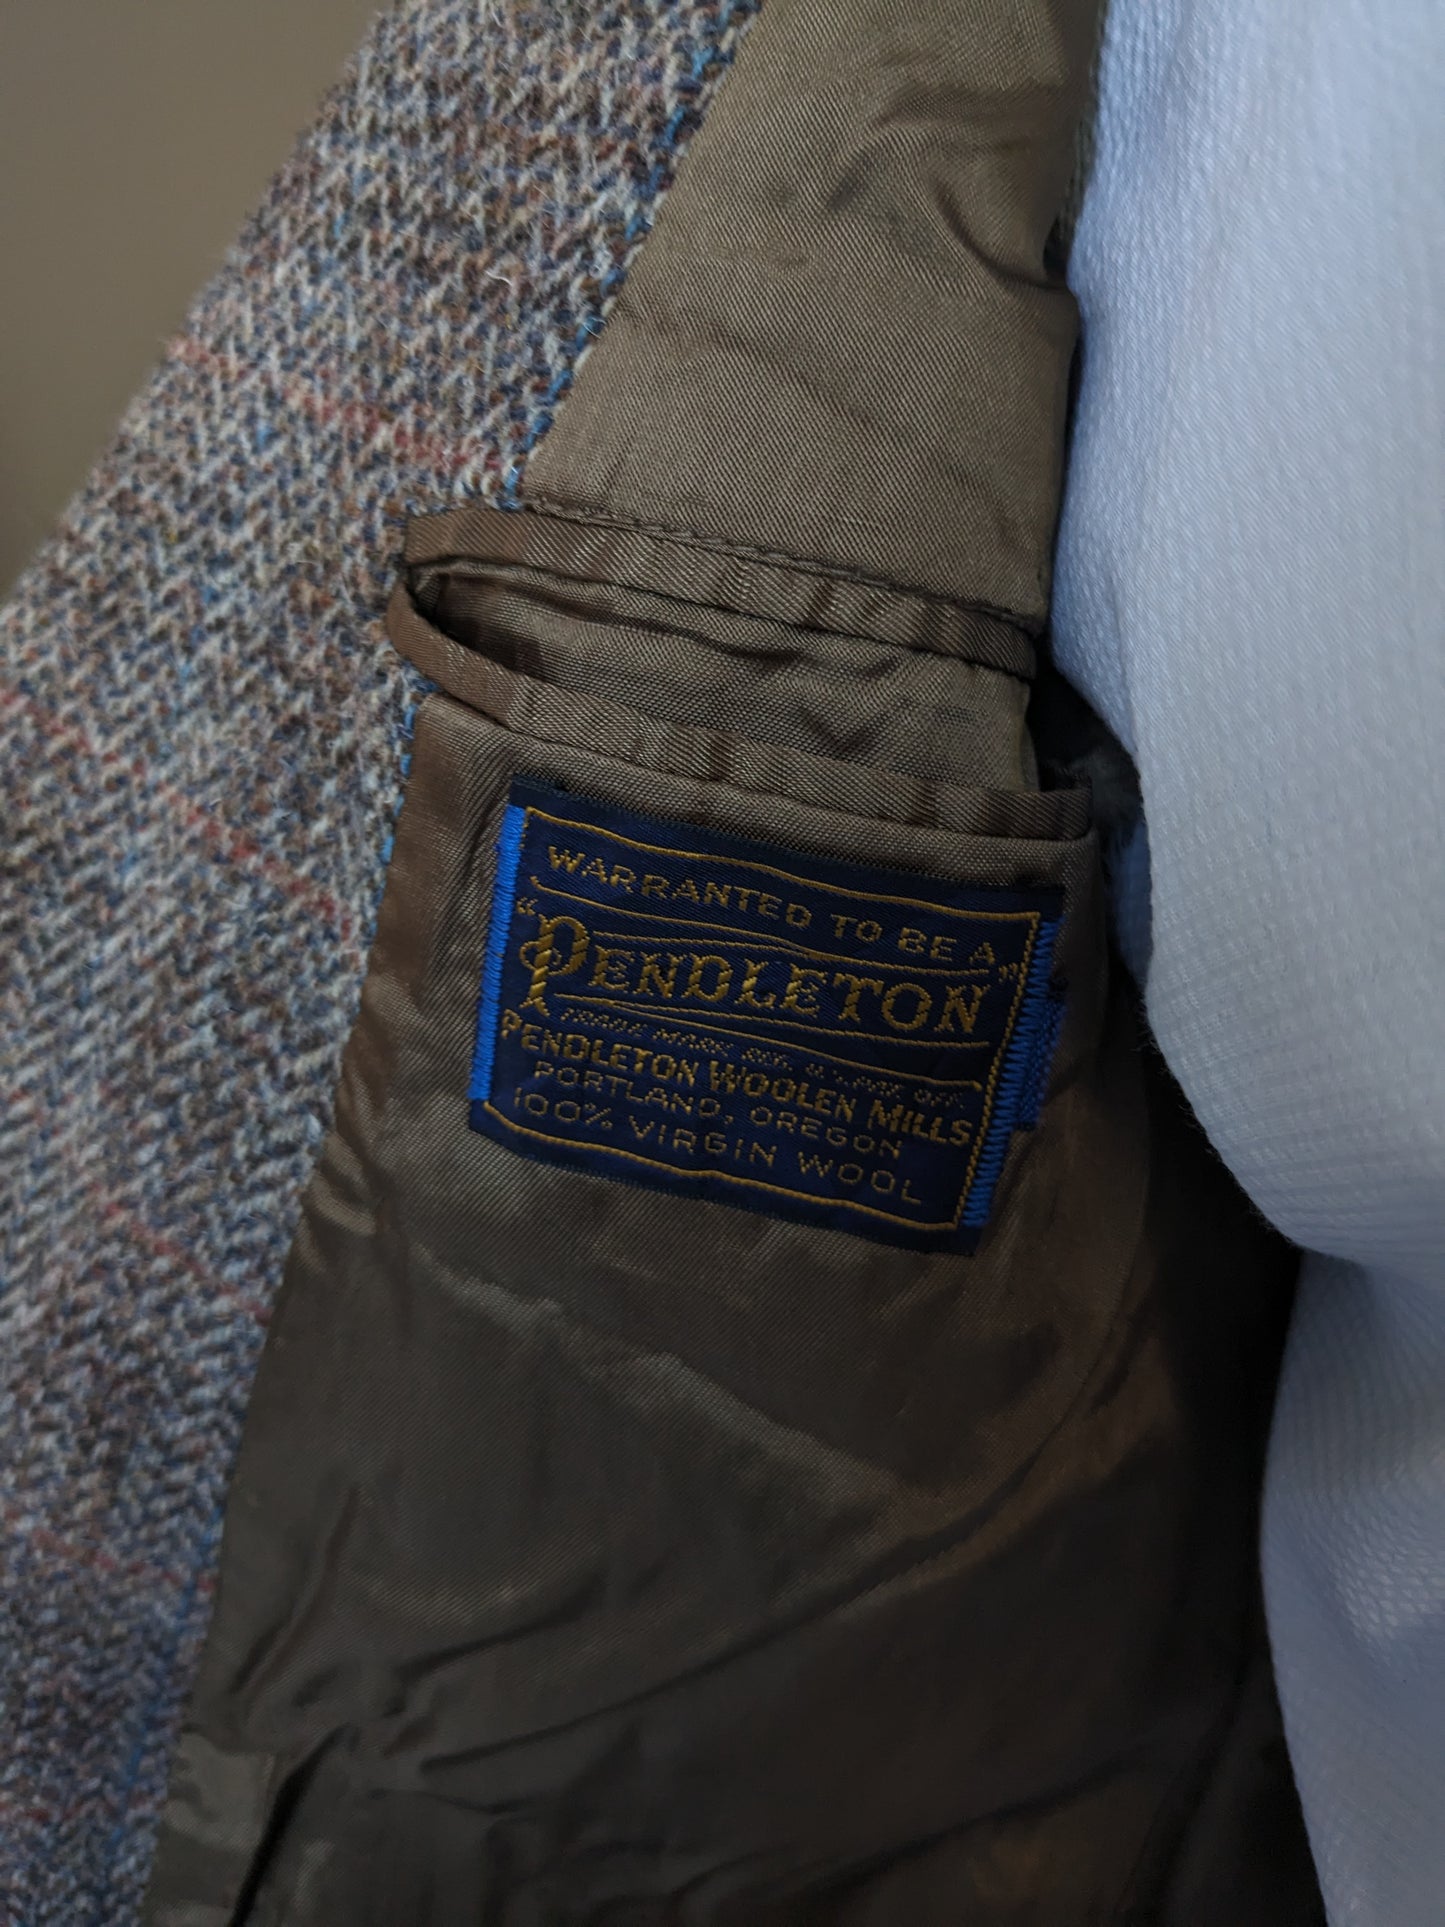 Veste en laine Pendleton. Motif à chevrons marron avec bande bleu rouge. Taille 50 / M.